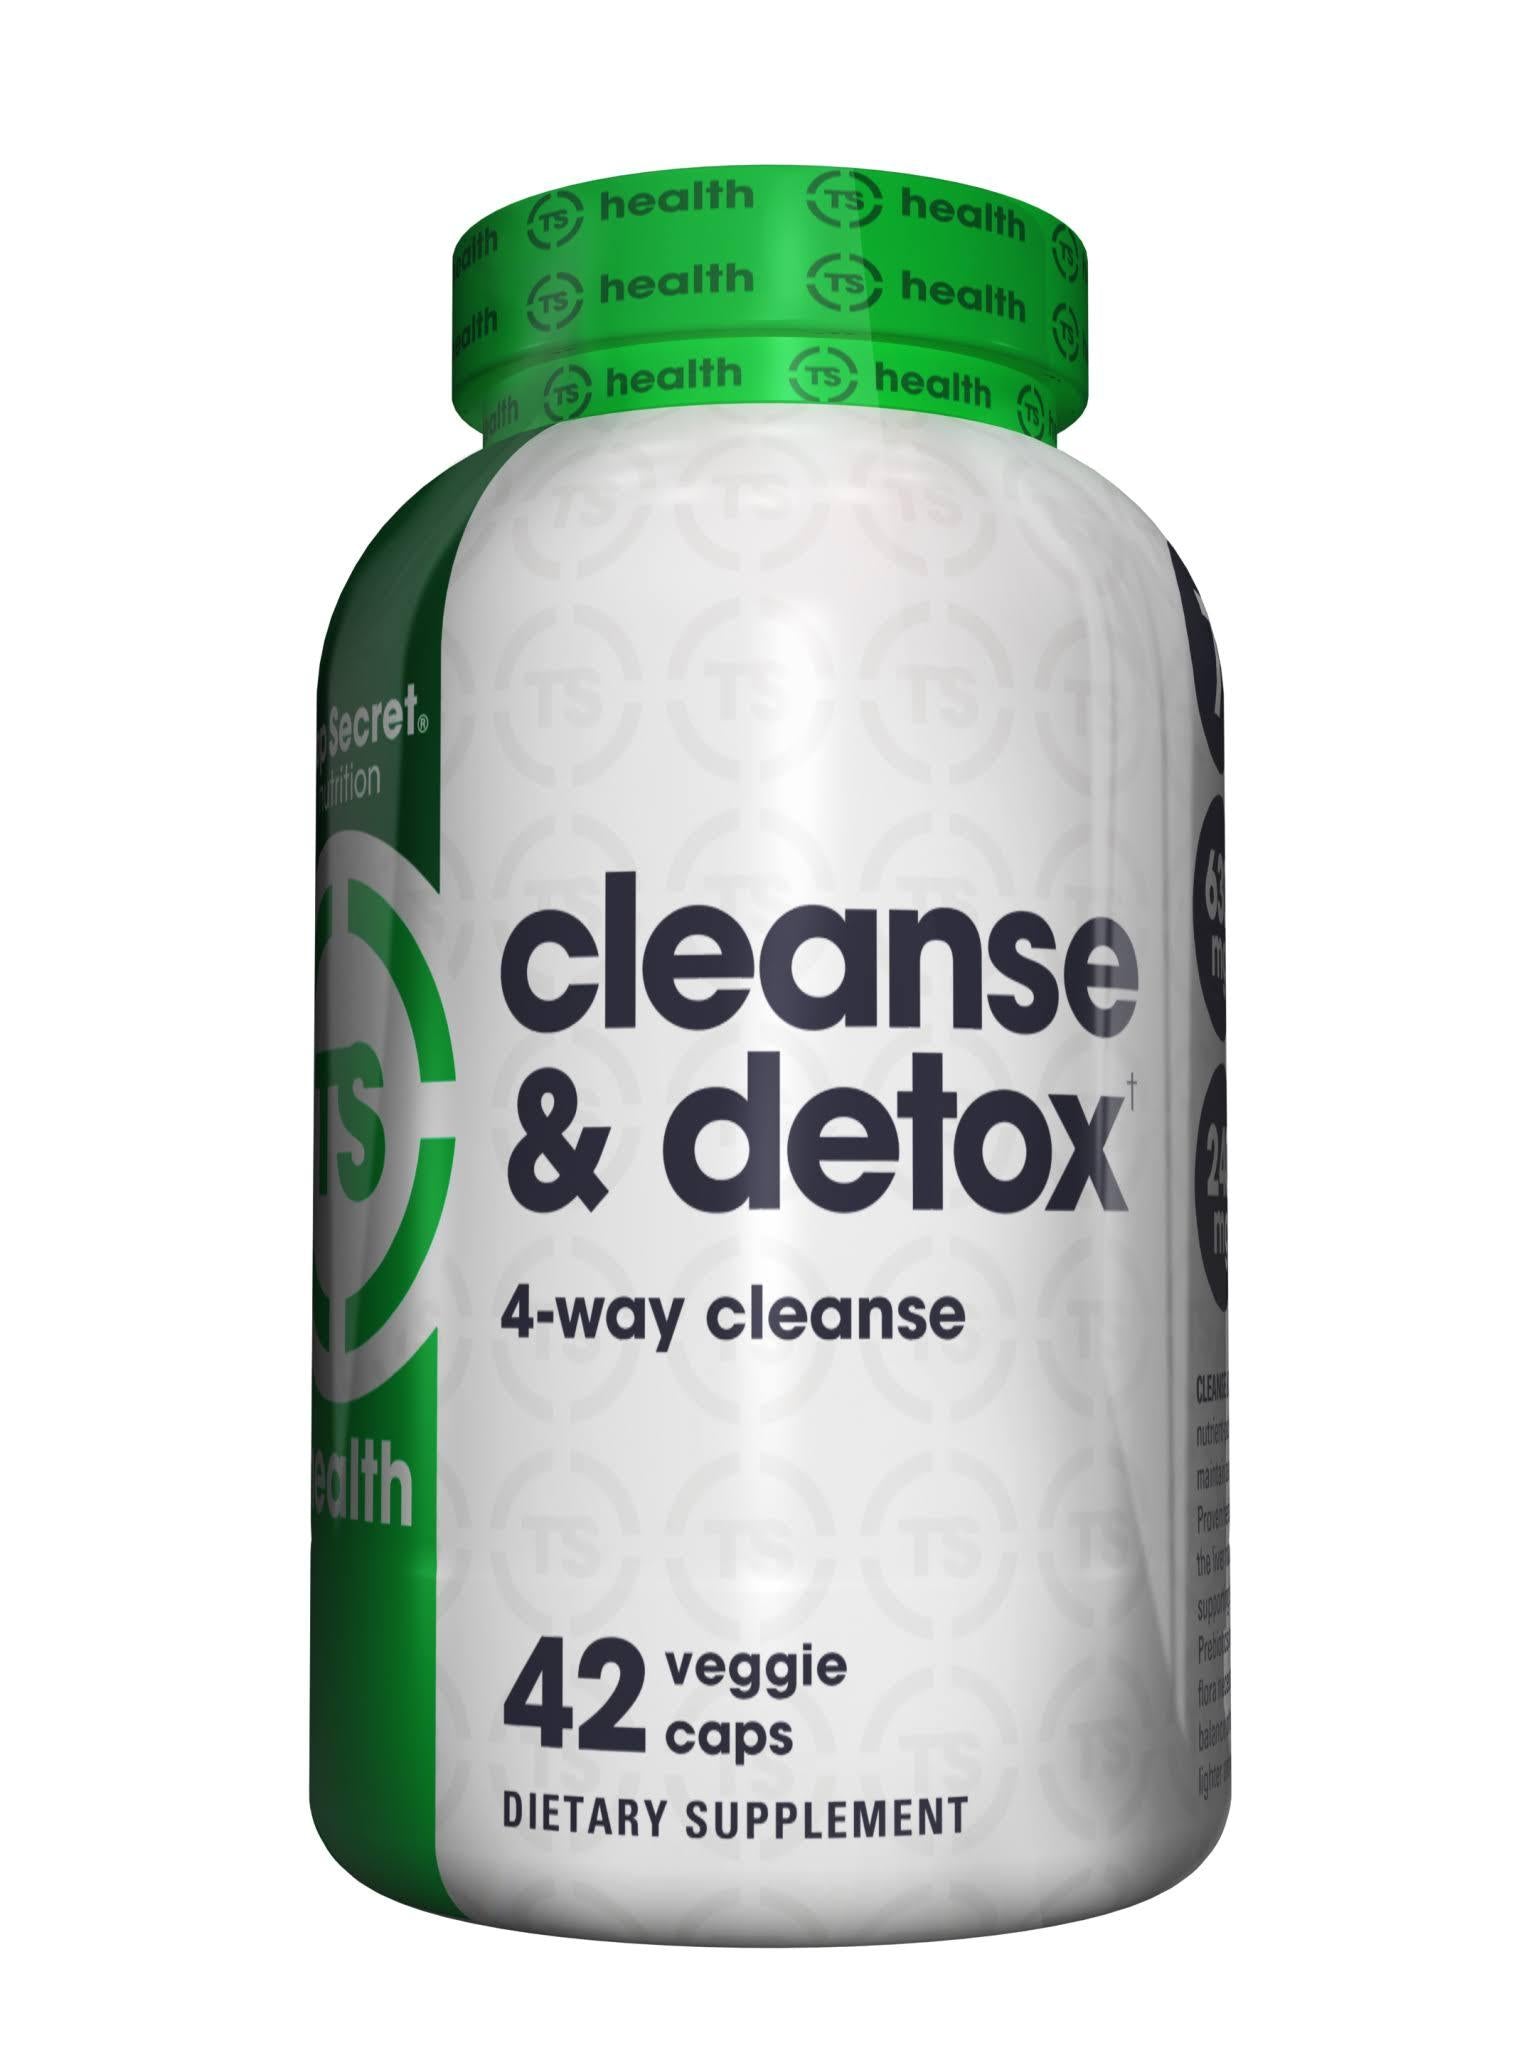 Top Secret Nutrition- 7 Day Cleanse + Detox